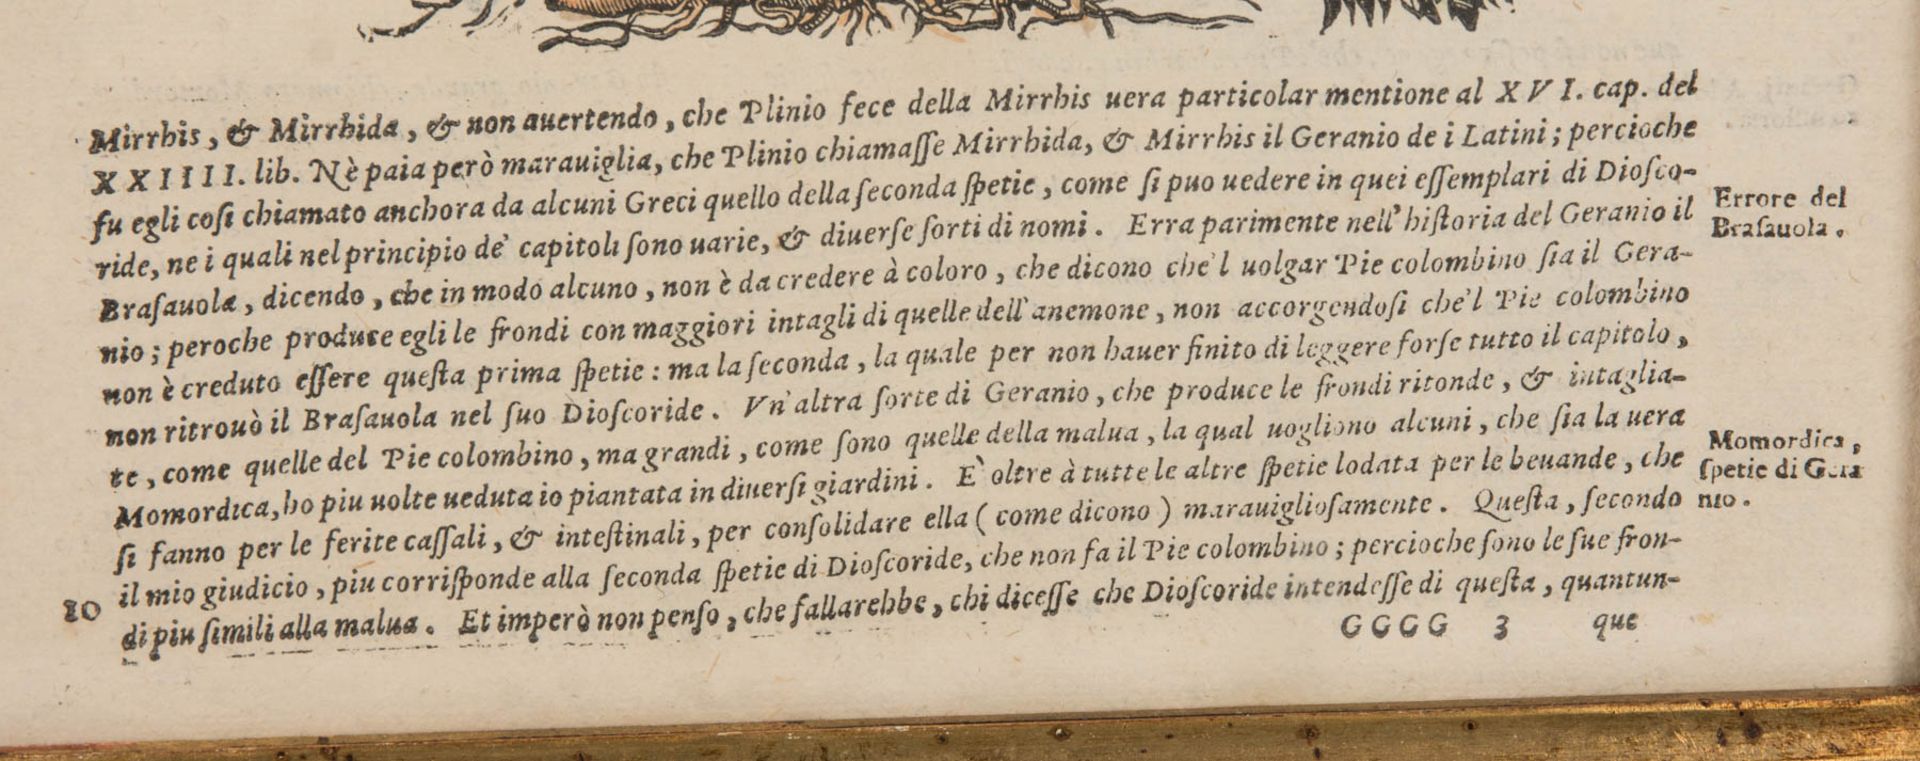 Schöne Pflanzendarstellung, Blutige Geranie, Kolorierter Kuperstich im Imperial-Folio Format. - Image 3 of 6